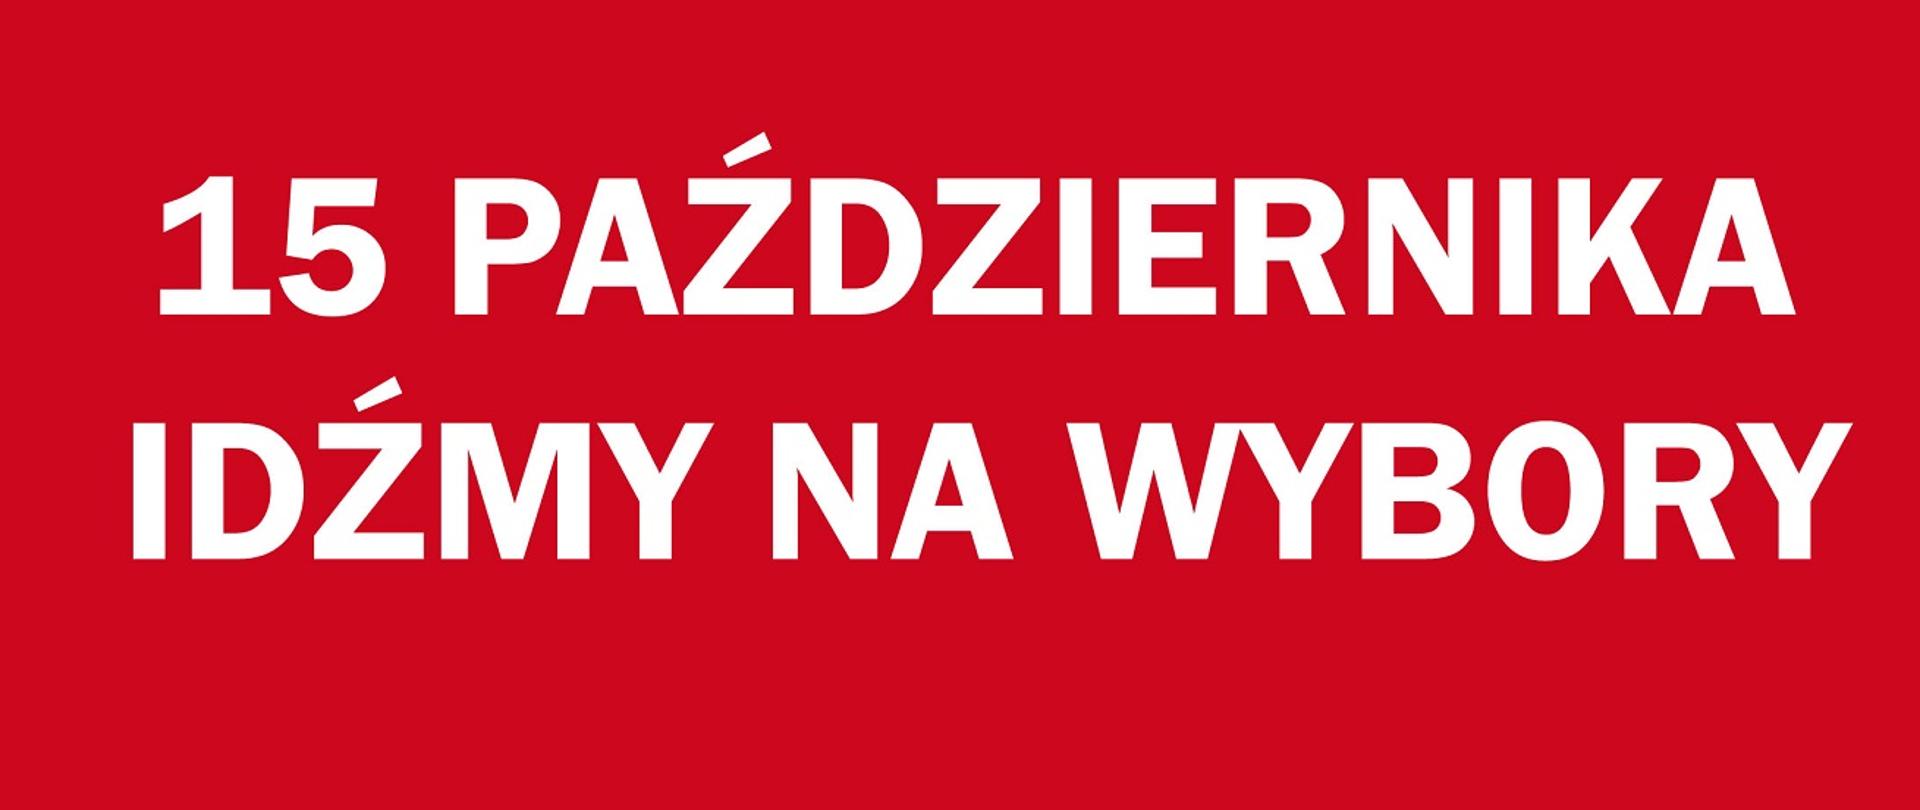 plakat biało czerwony zachęcający do udziału w wyborach 